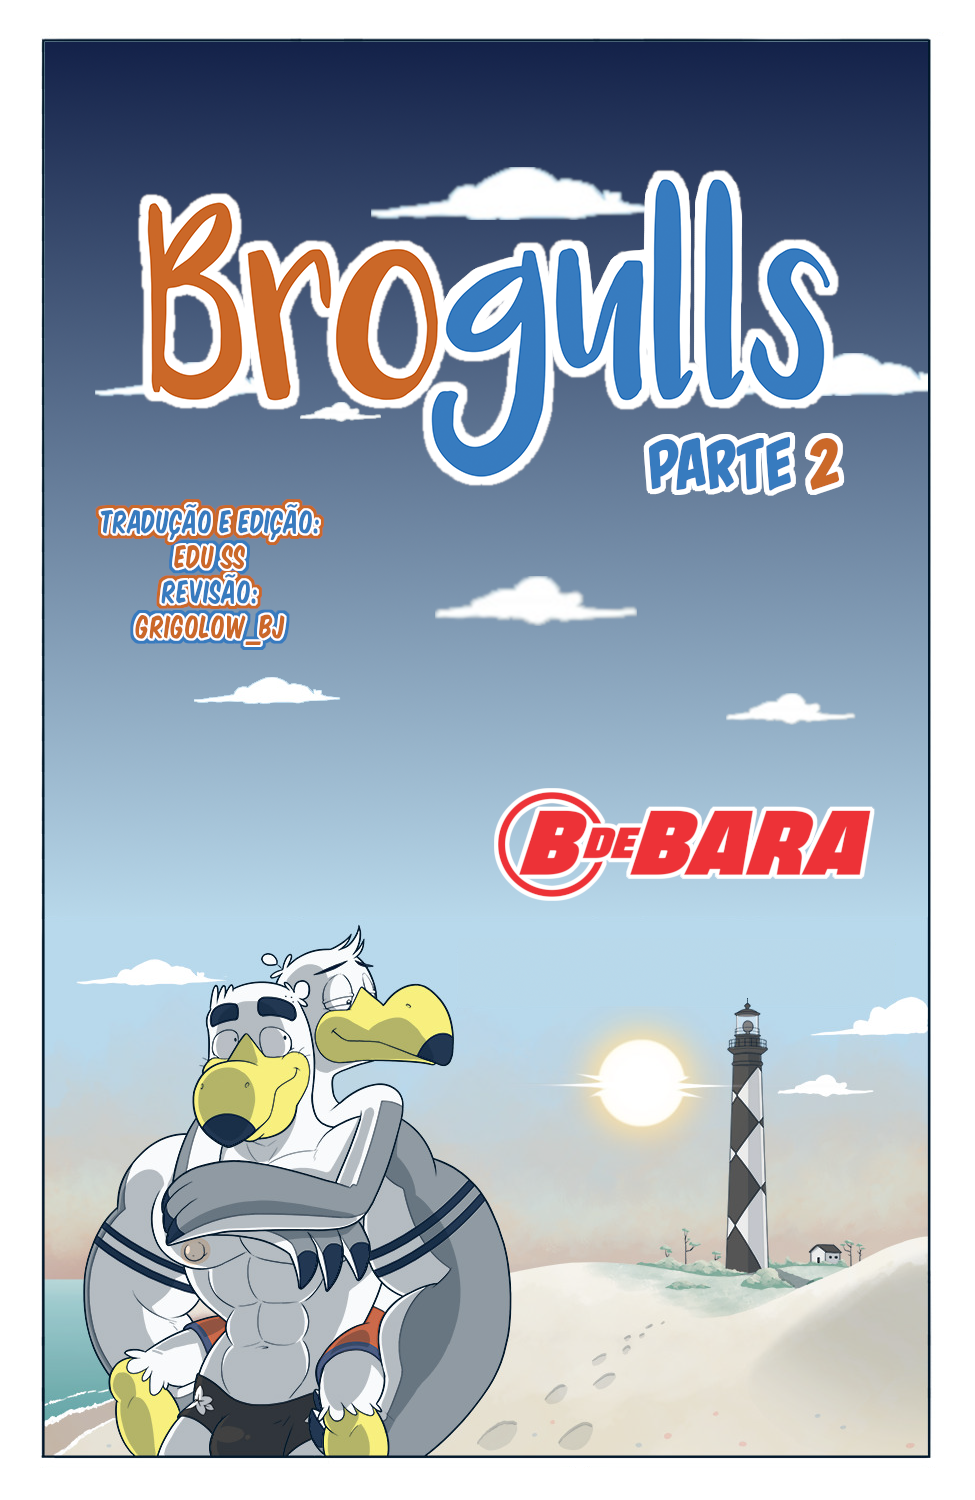 Brogulls - Parte 2.